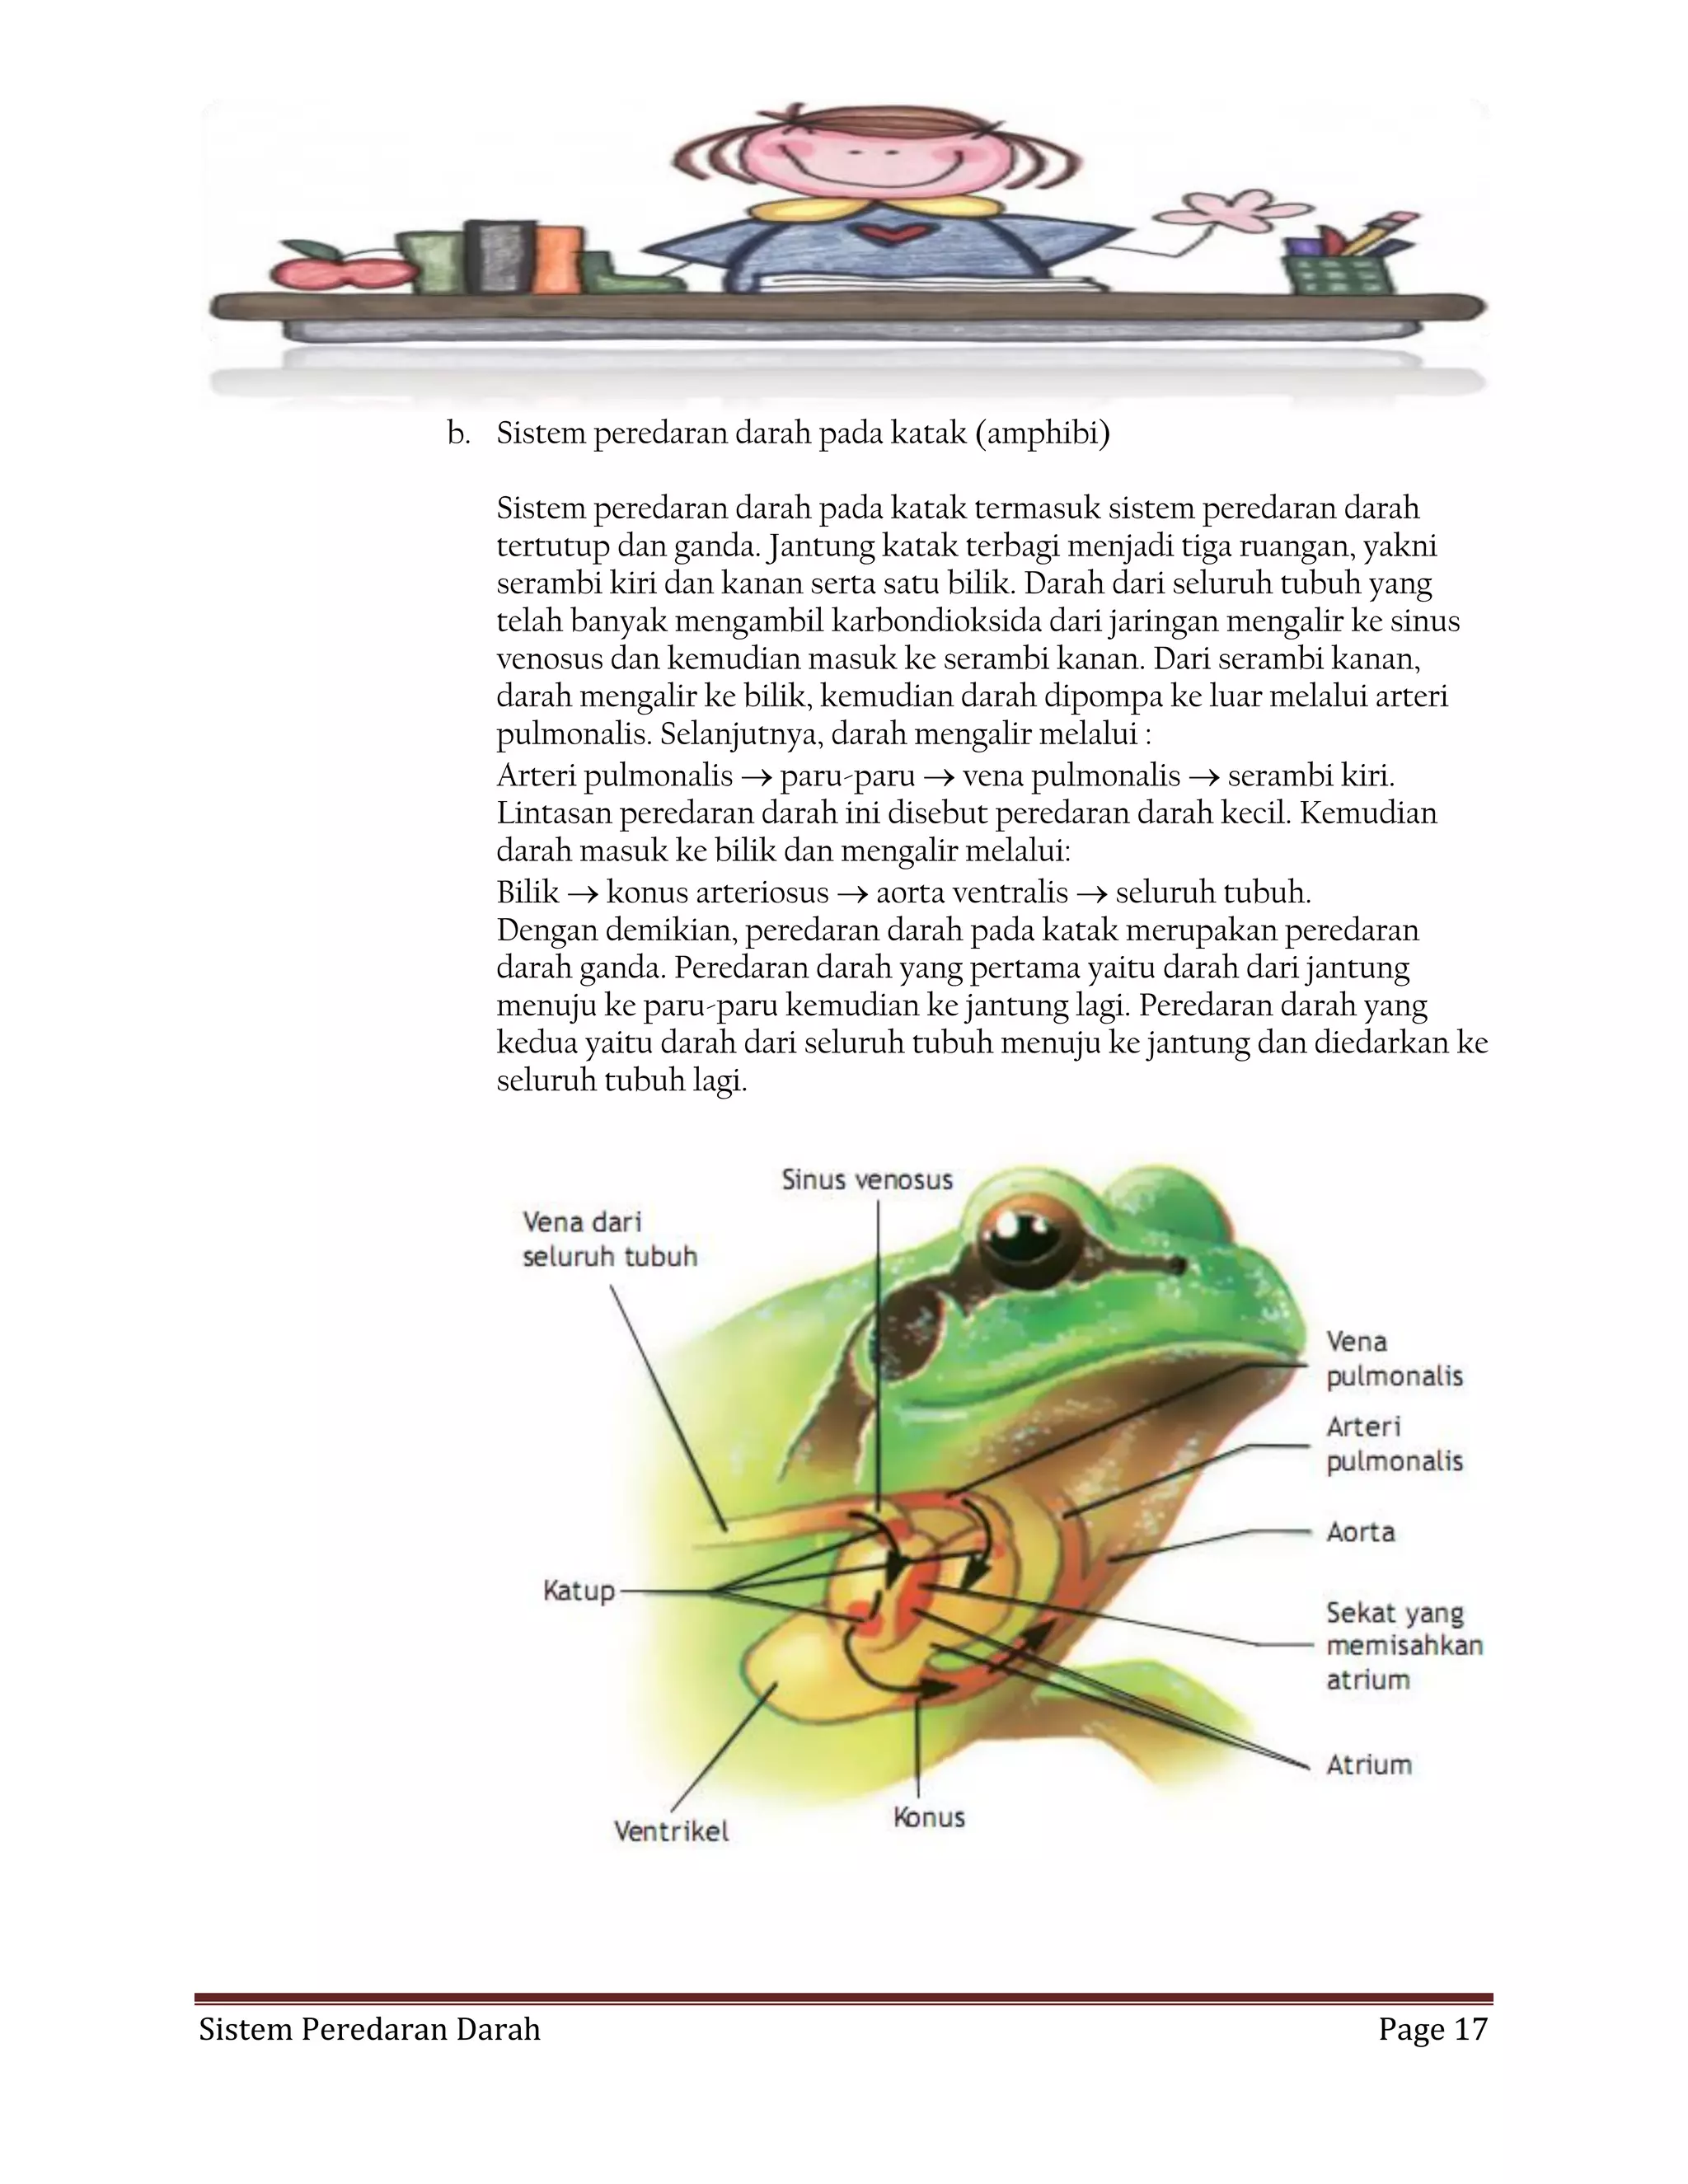 Organ peredaran darah pada hewan katak adalah